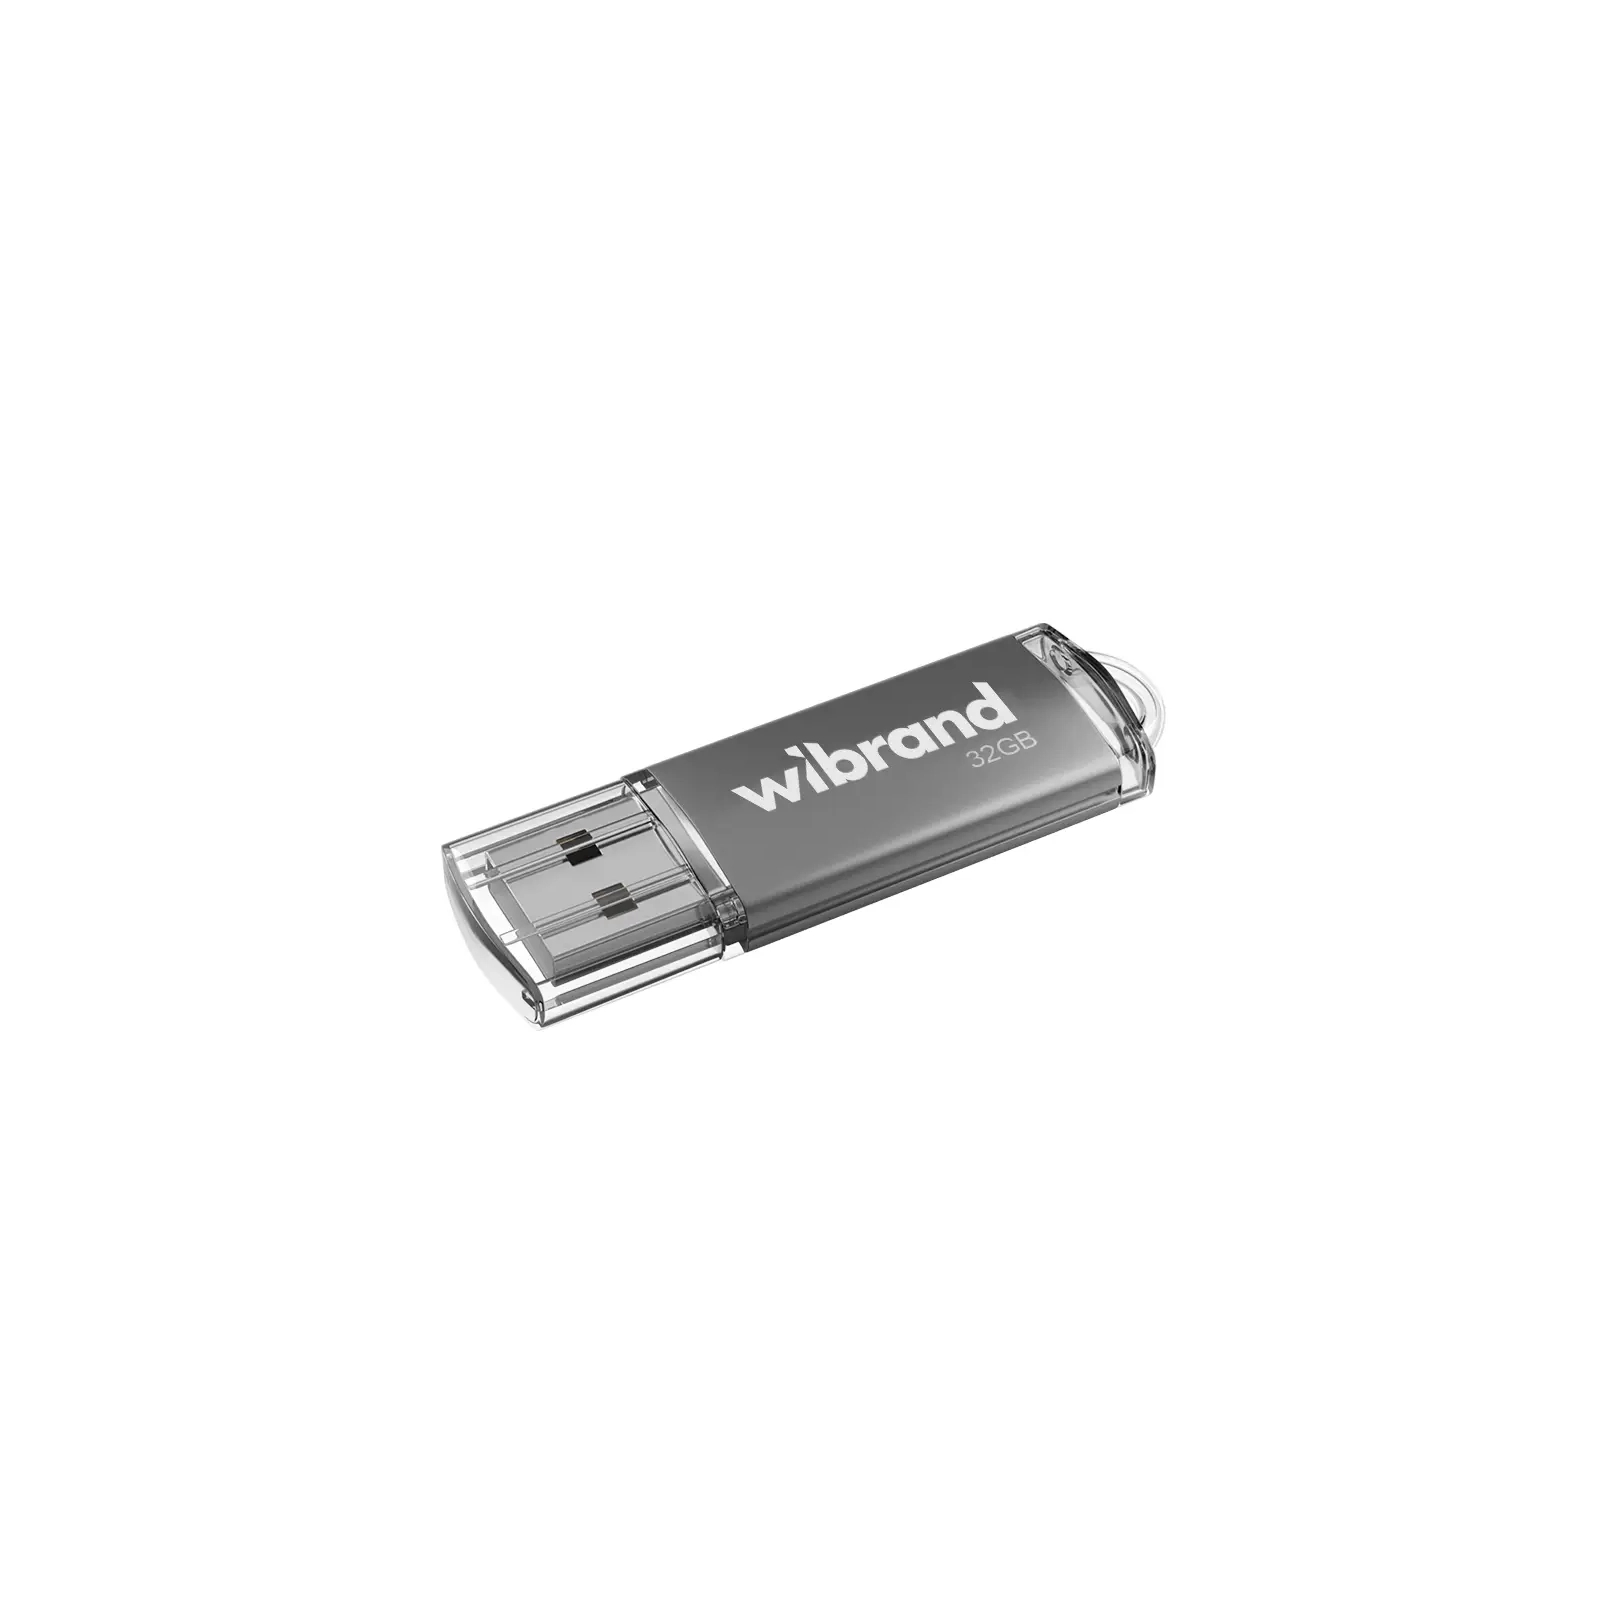 USB флеш накопитель Wibrand 32GB Cougar Blue USB 2.0 (WI2.0/CU32P1U)